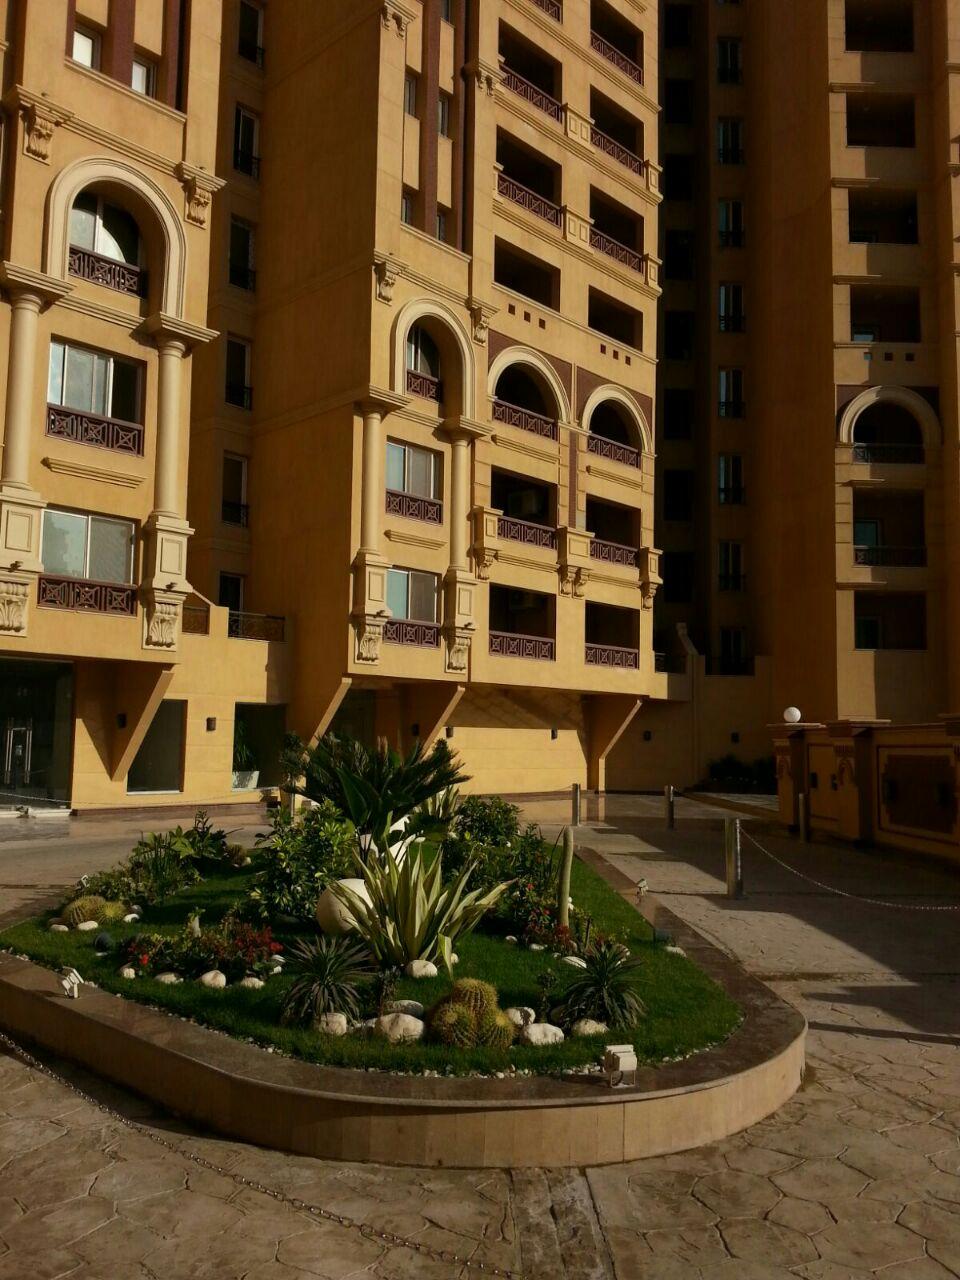 شقة رائعة وراقية جداً للبيع في الإسكندرية ( مرفق 25 صورة )